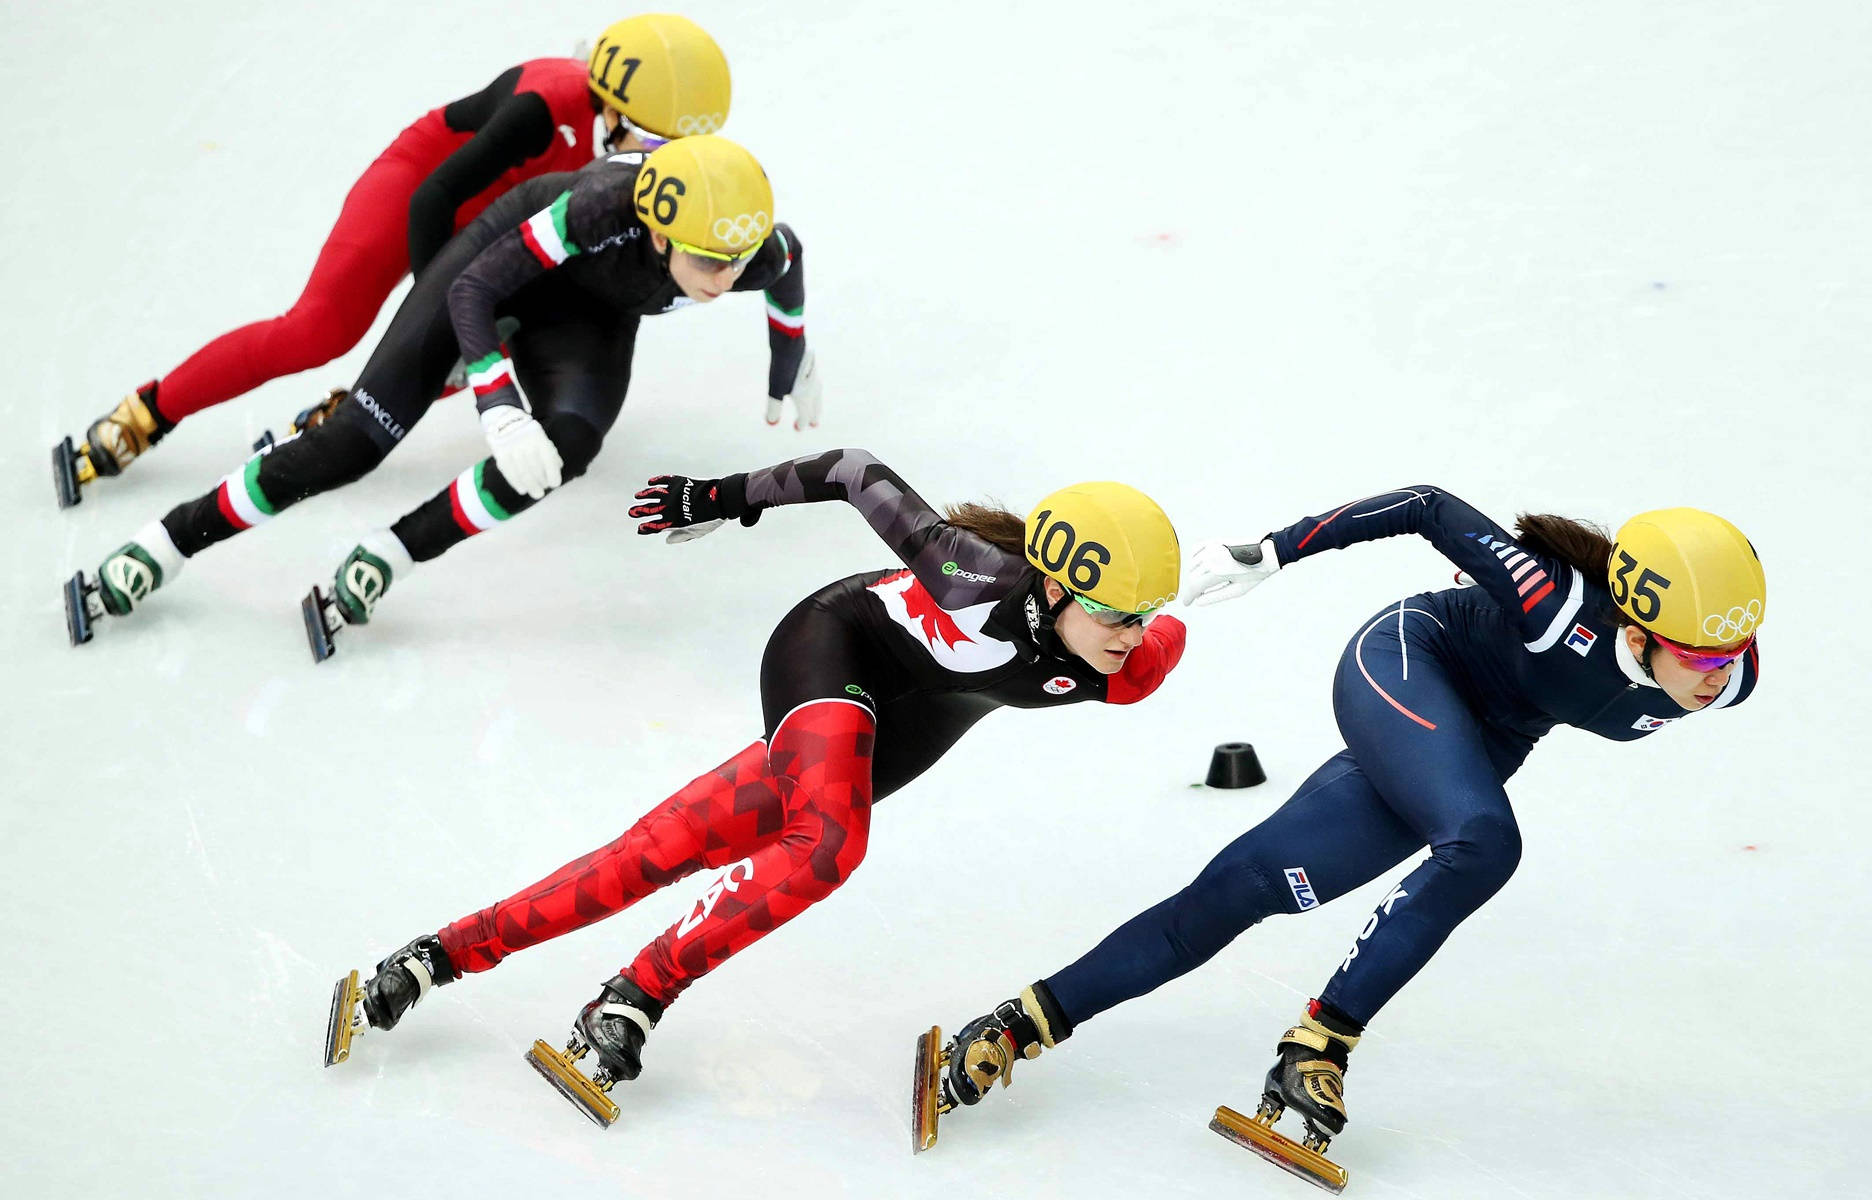 Fraueneisschnelllauf Olympische Spiele 2014 Wallpaper